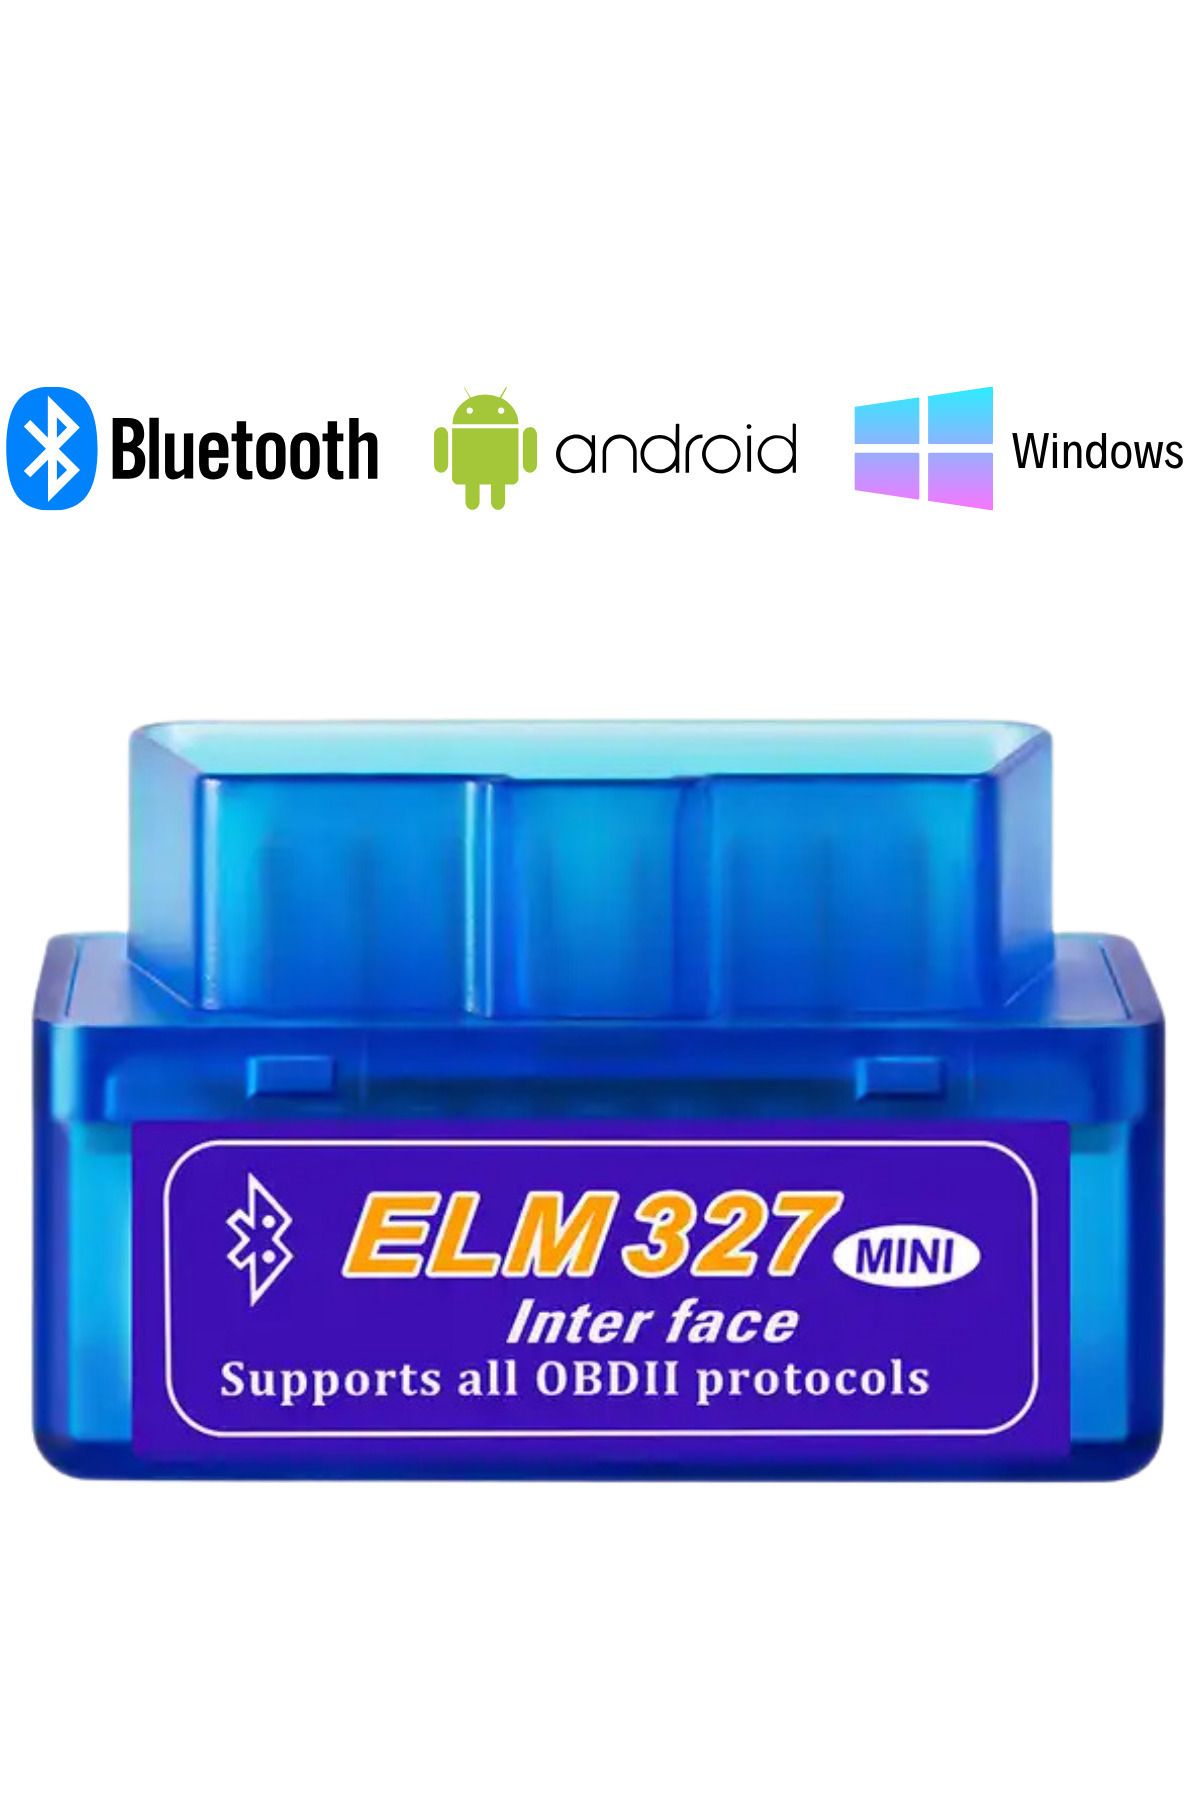 ELM 327 Elm327 Bluetooth Araba Türkçe Araç Arıza Tespit Cihazı Vers. 2.1